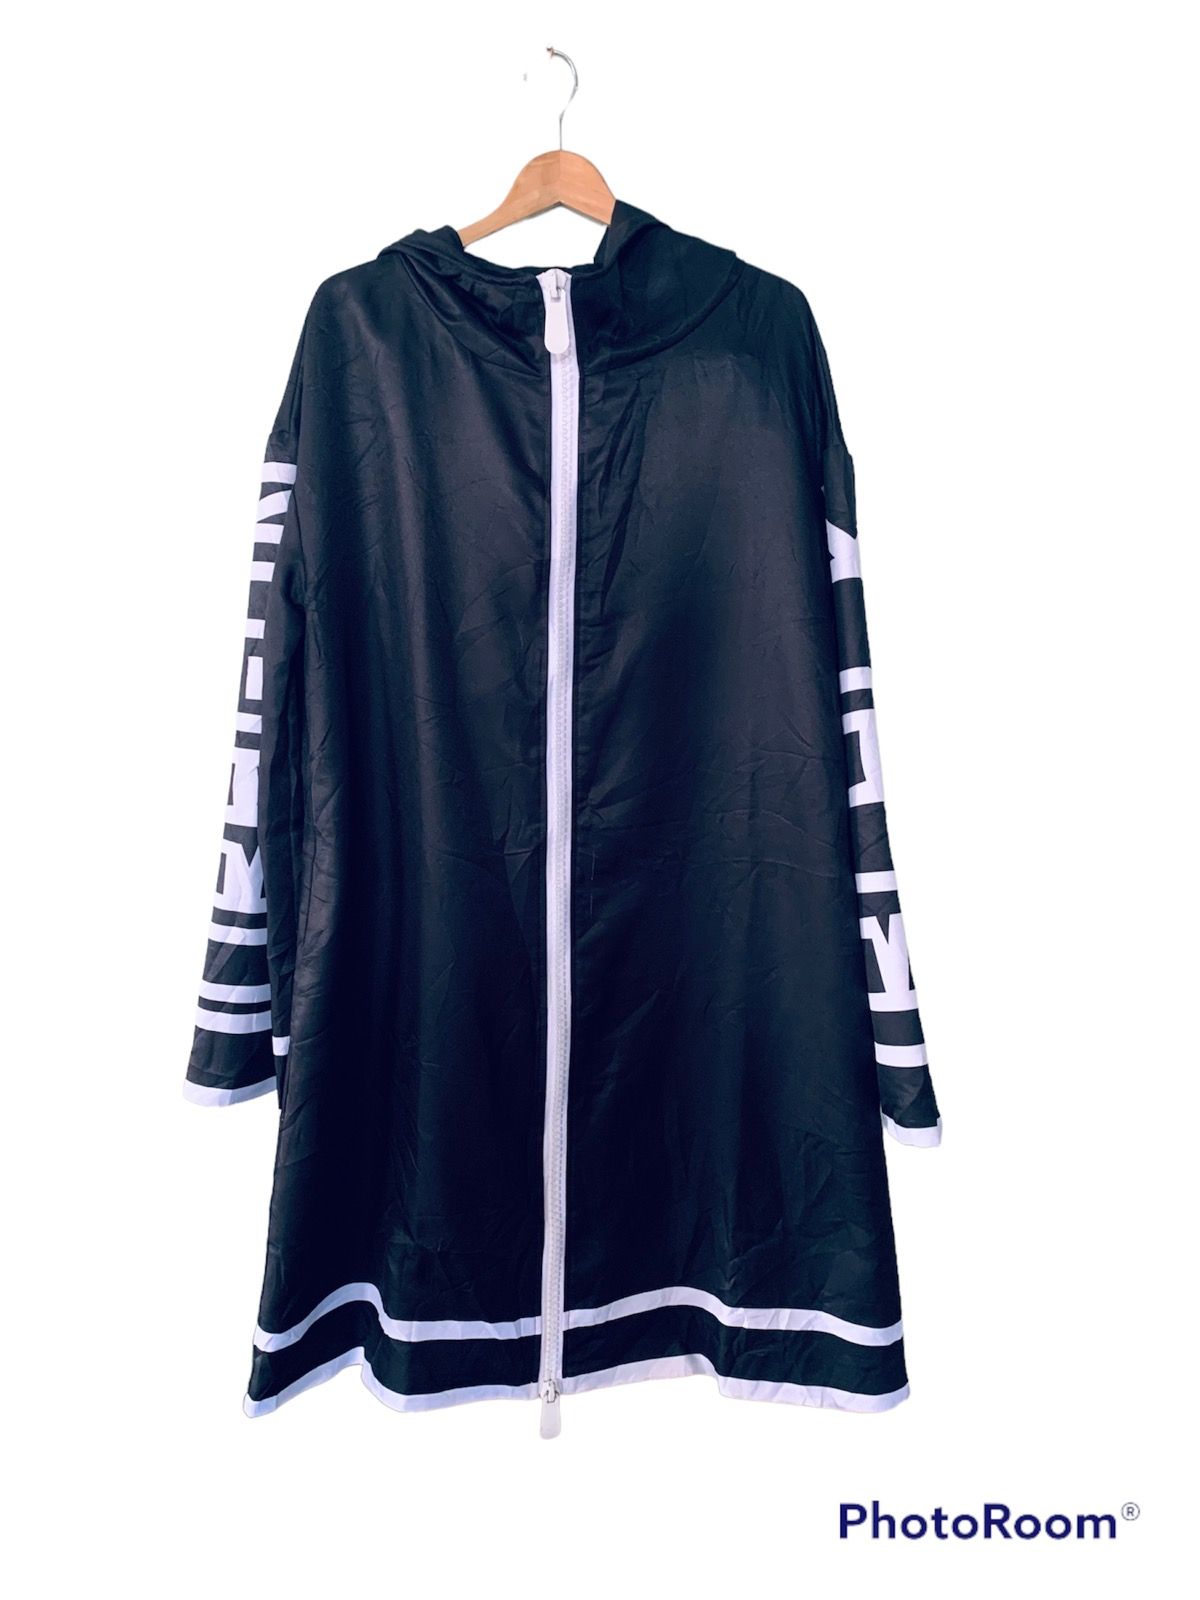 Japanese Brand Tokyo Revengers Brahman Akashi Takeomi Jacket Size US XL / EU 56 / 4 - 2 Preview